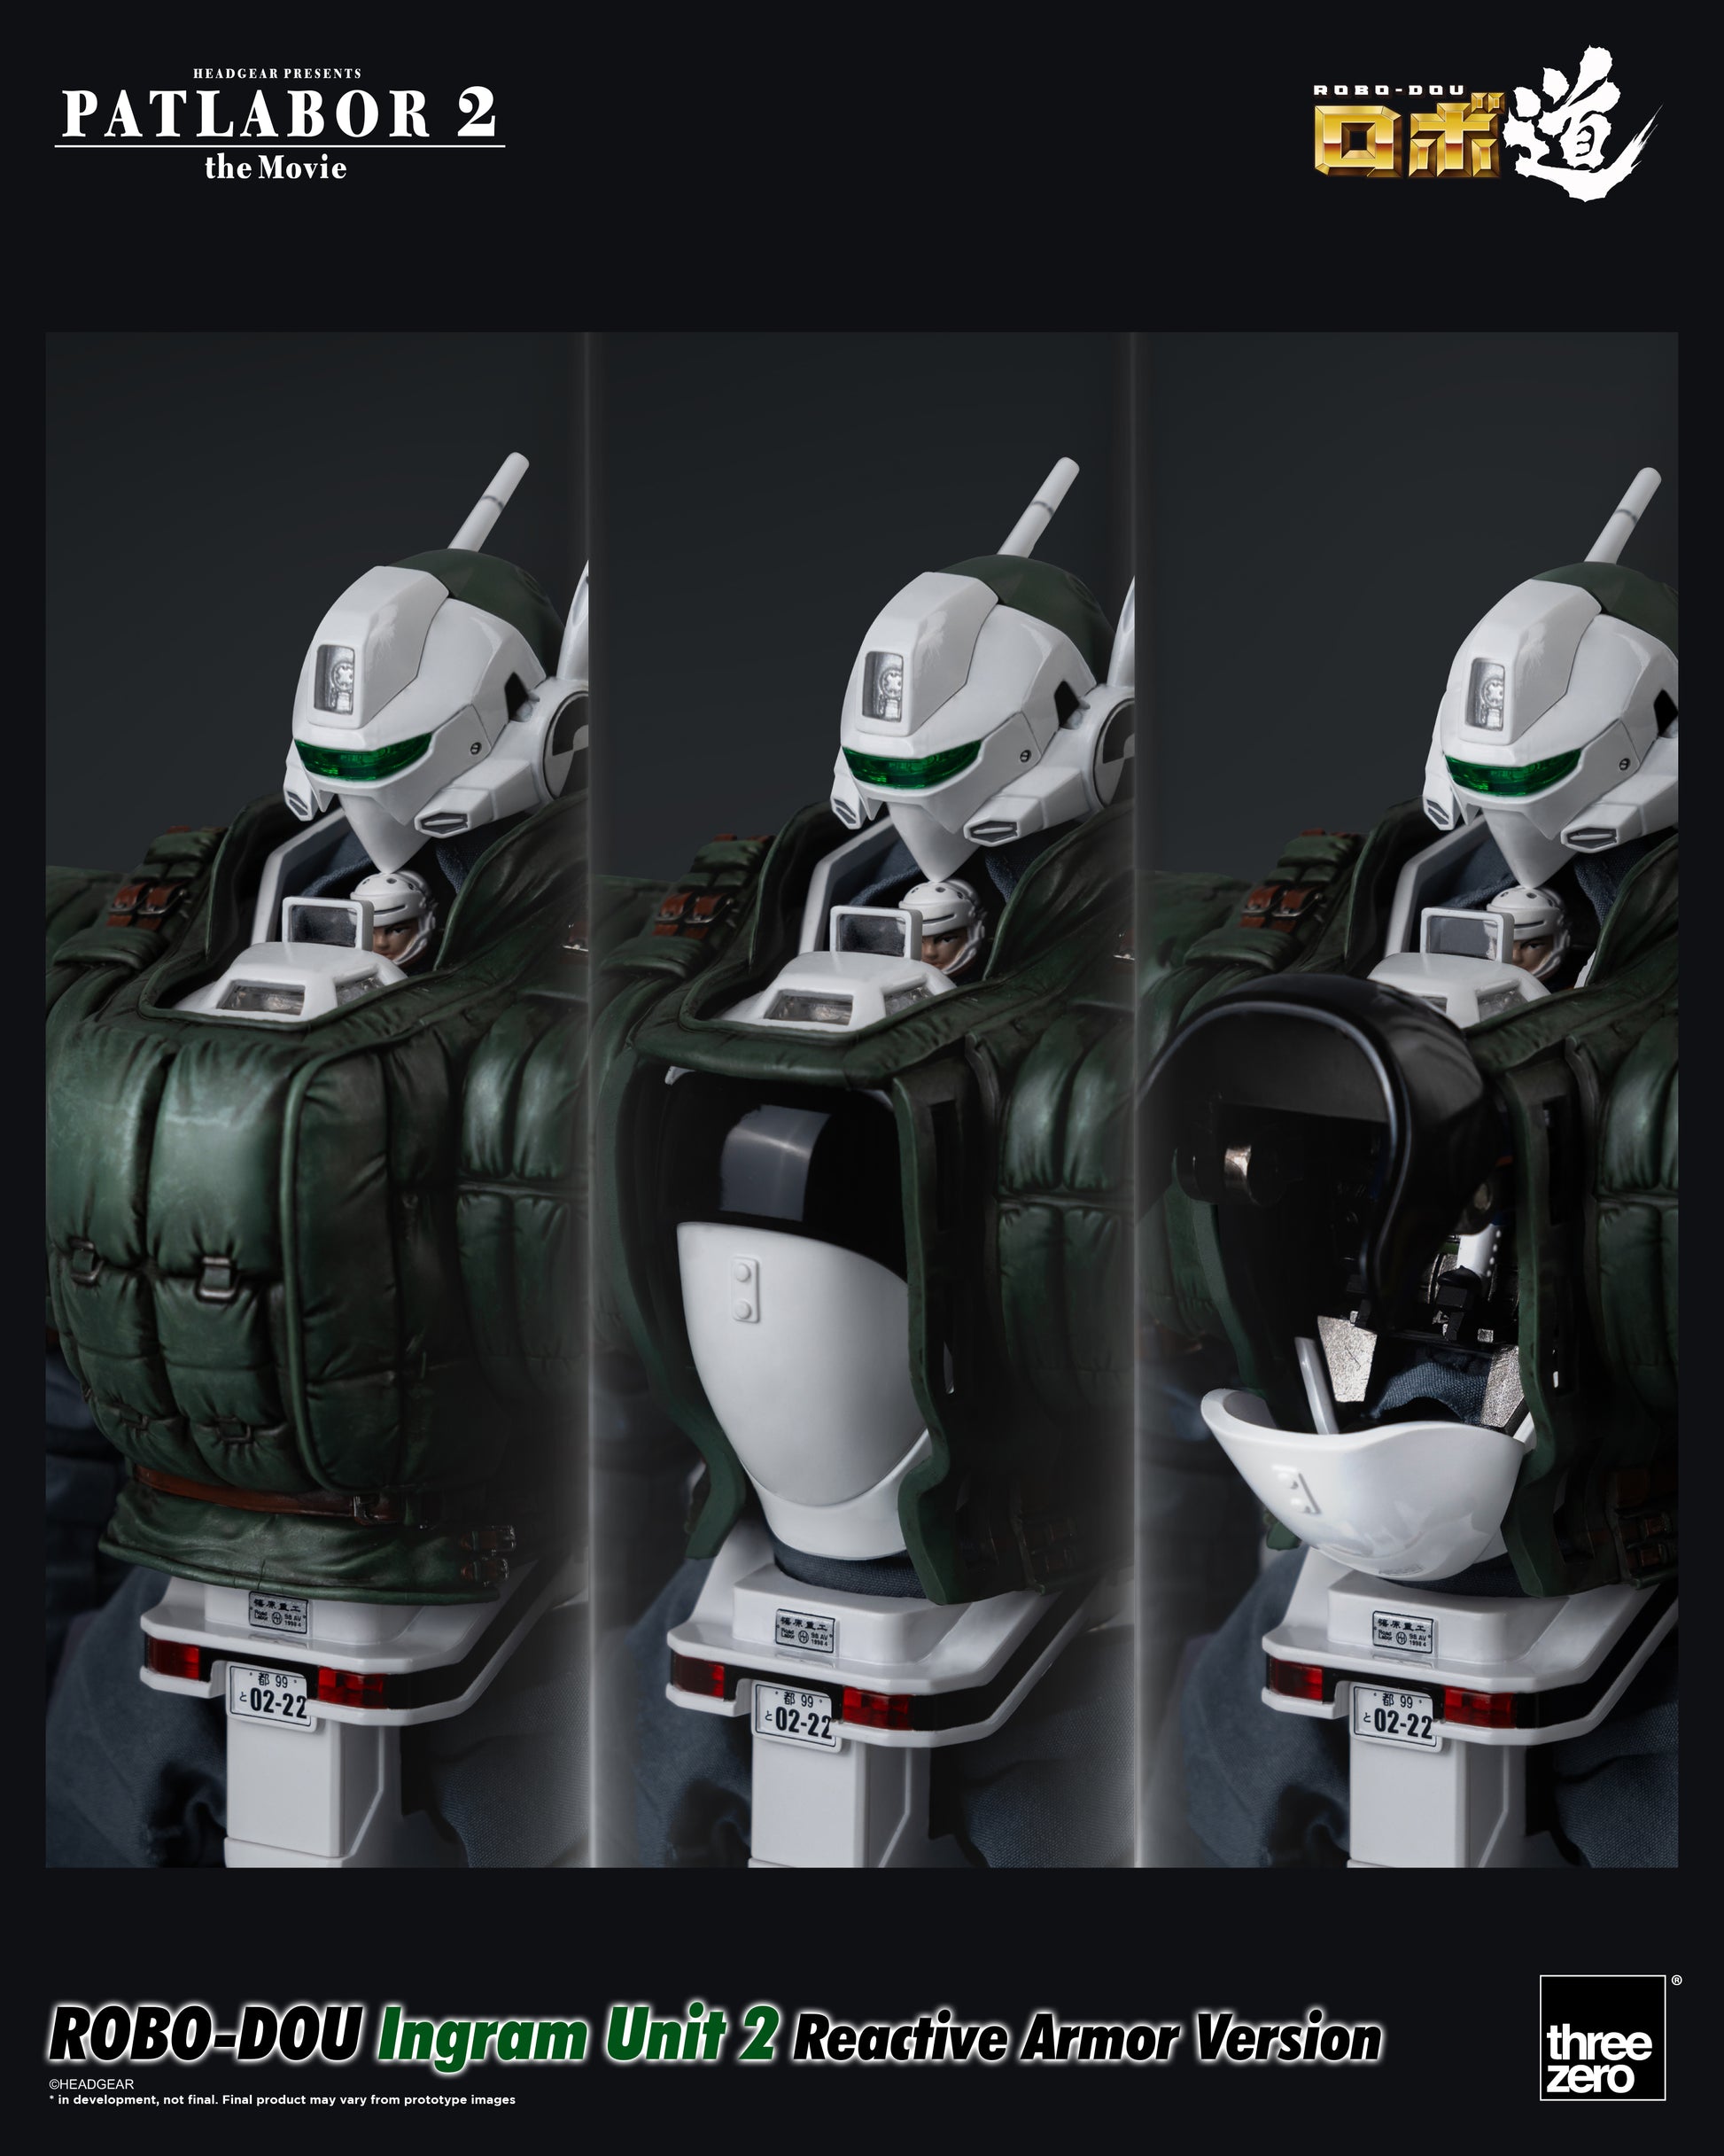 Patlabor 2: The Movie - ROBO-DOU Ingram Unit 2 Reactive Armor Version showing cockpit